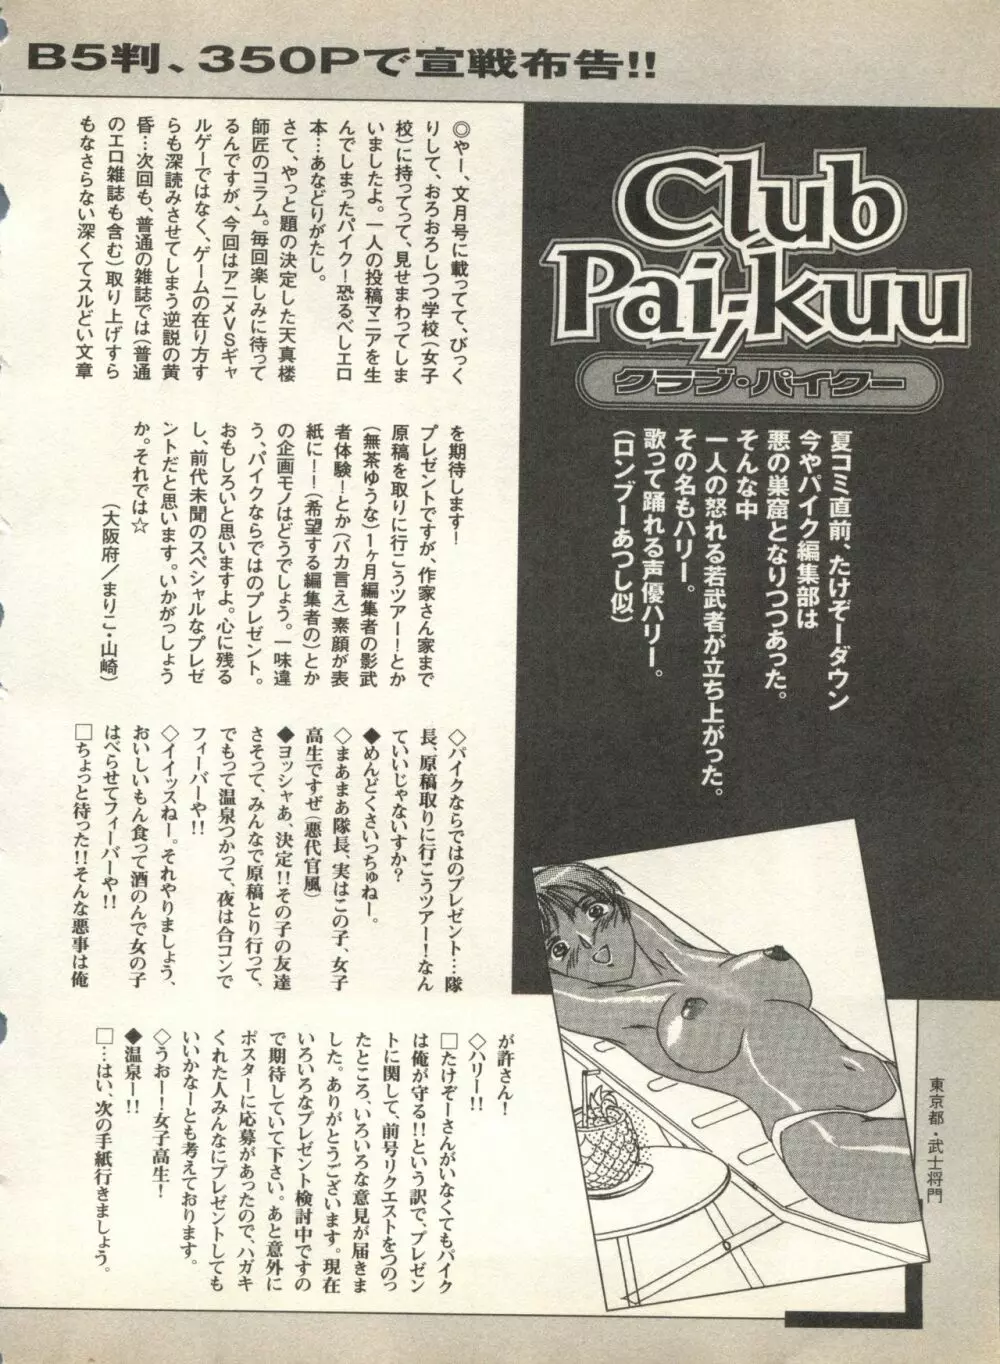 パイク Pai;kuu 1998 August Vol.12 葉月 256ページ